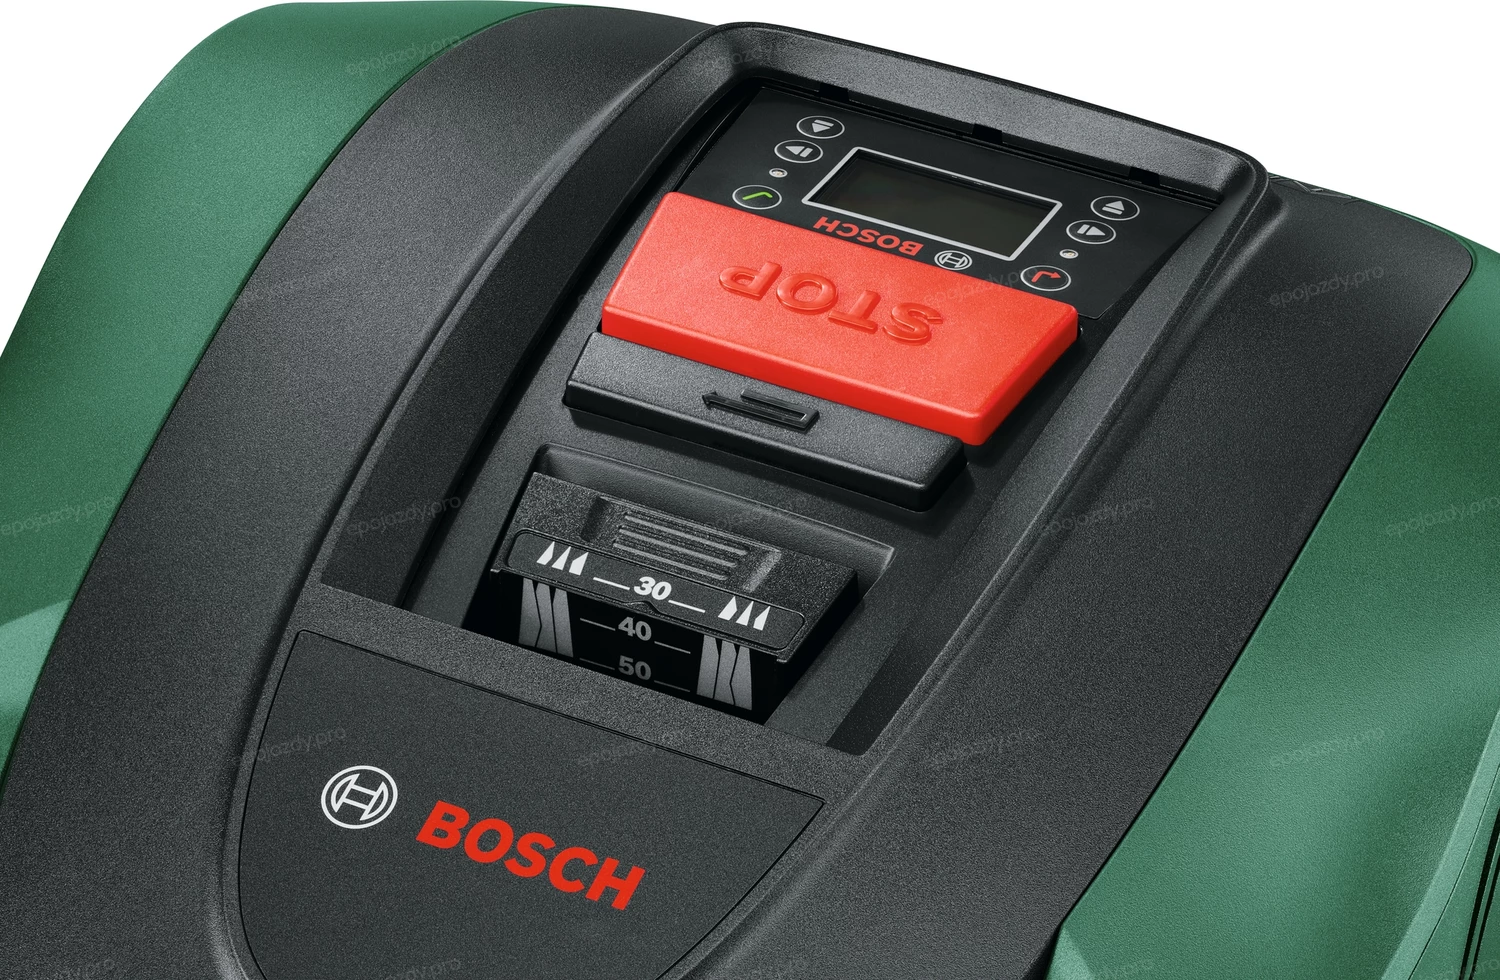 Robot koszący Bosch Indego M+ 700 jest bardzo prosty w obsłudze